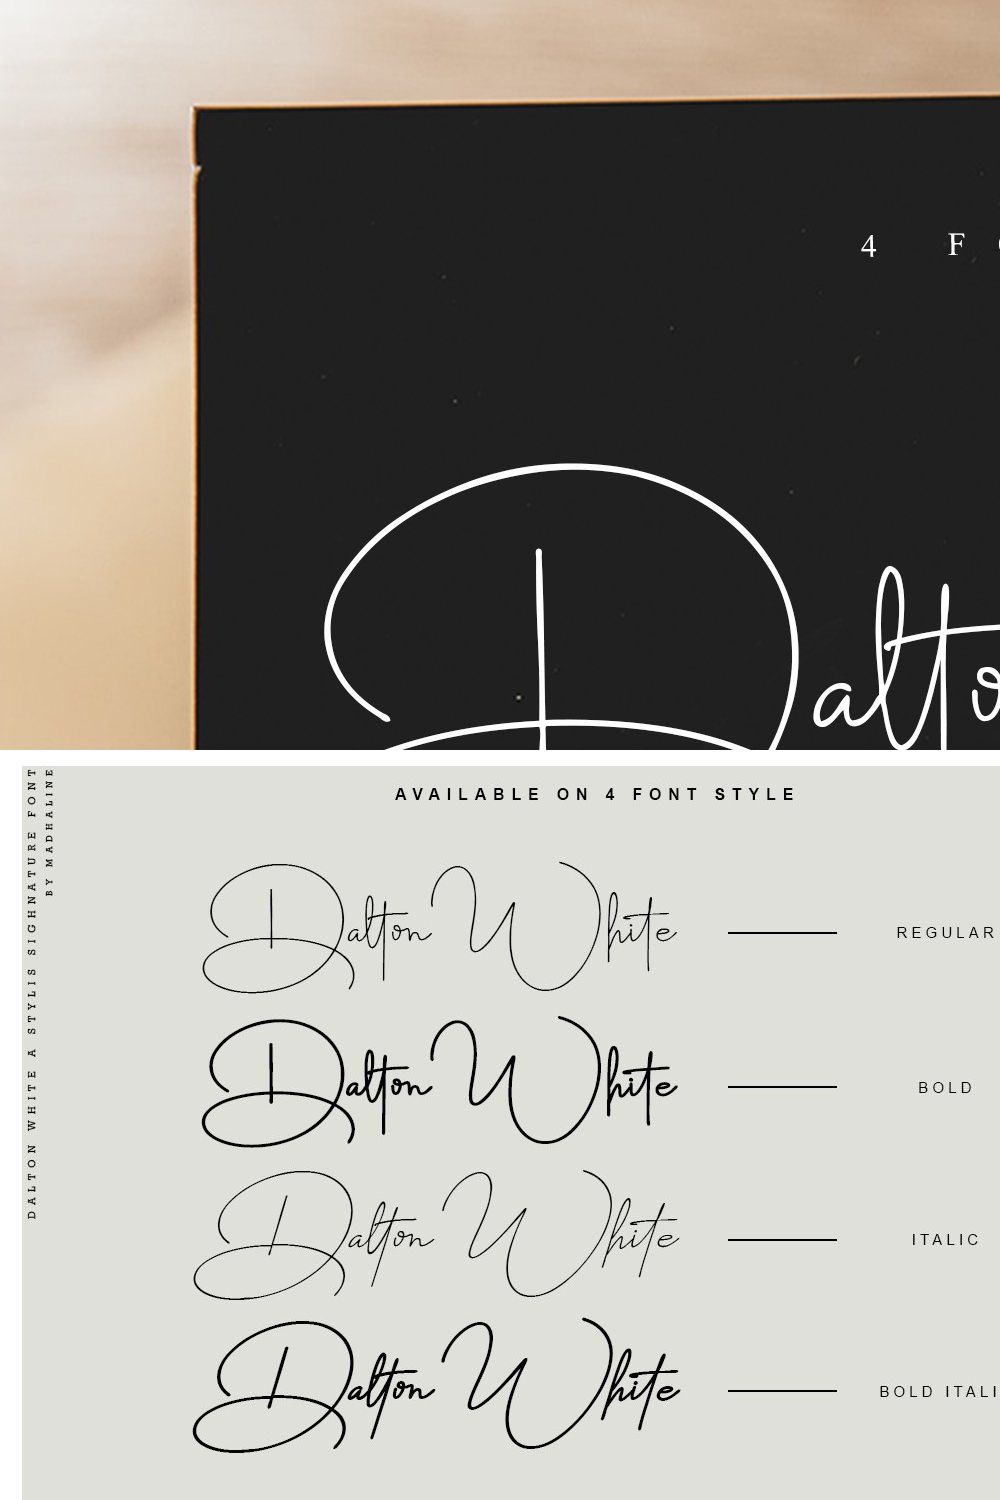 Dalton White 4 Font Style pinterest preview image.